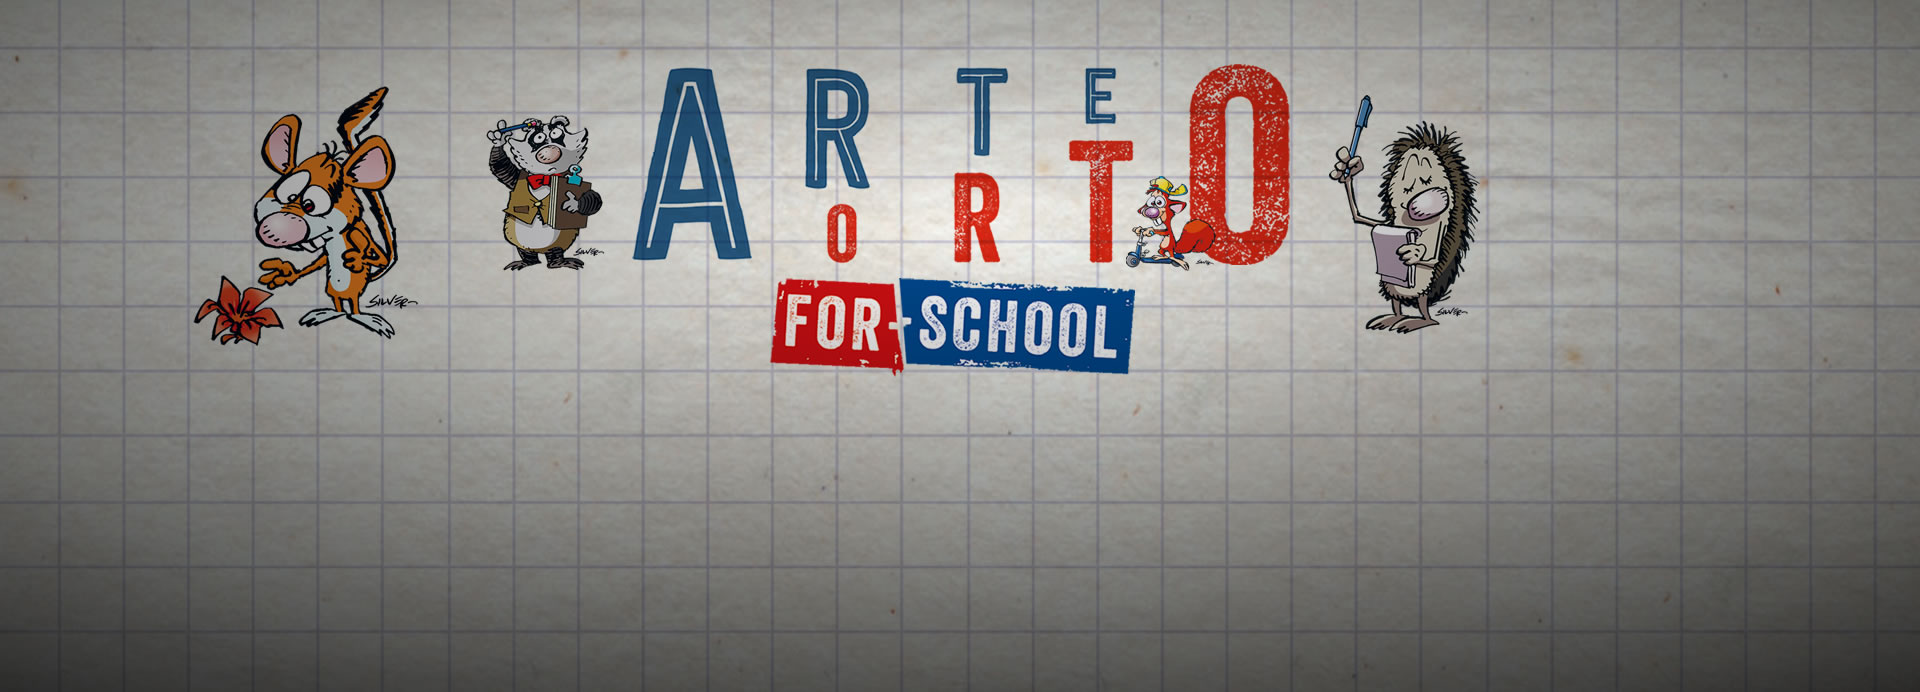 ARTEORTO - Percorso per le scuole